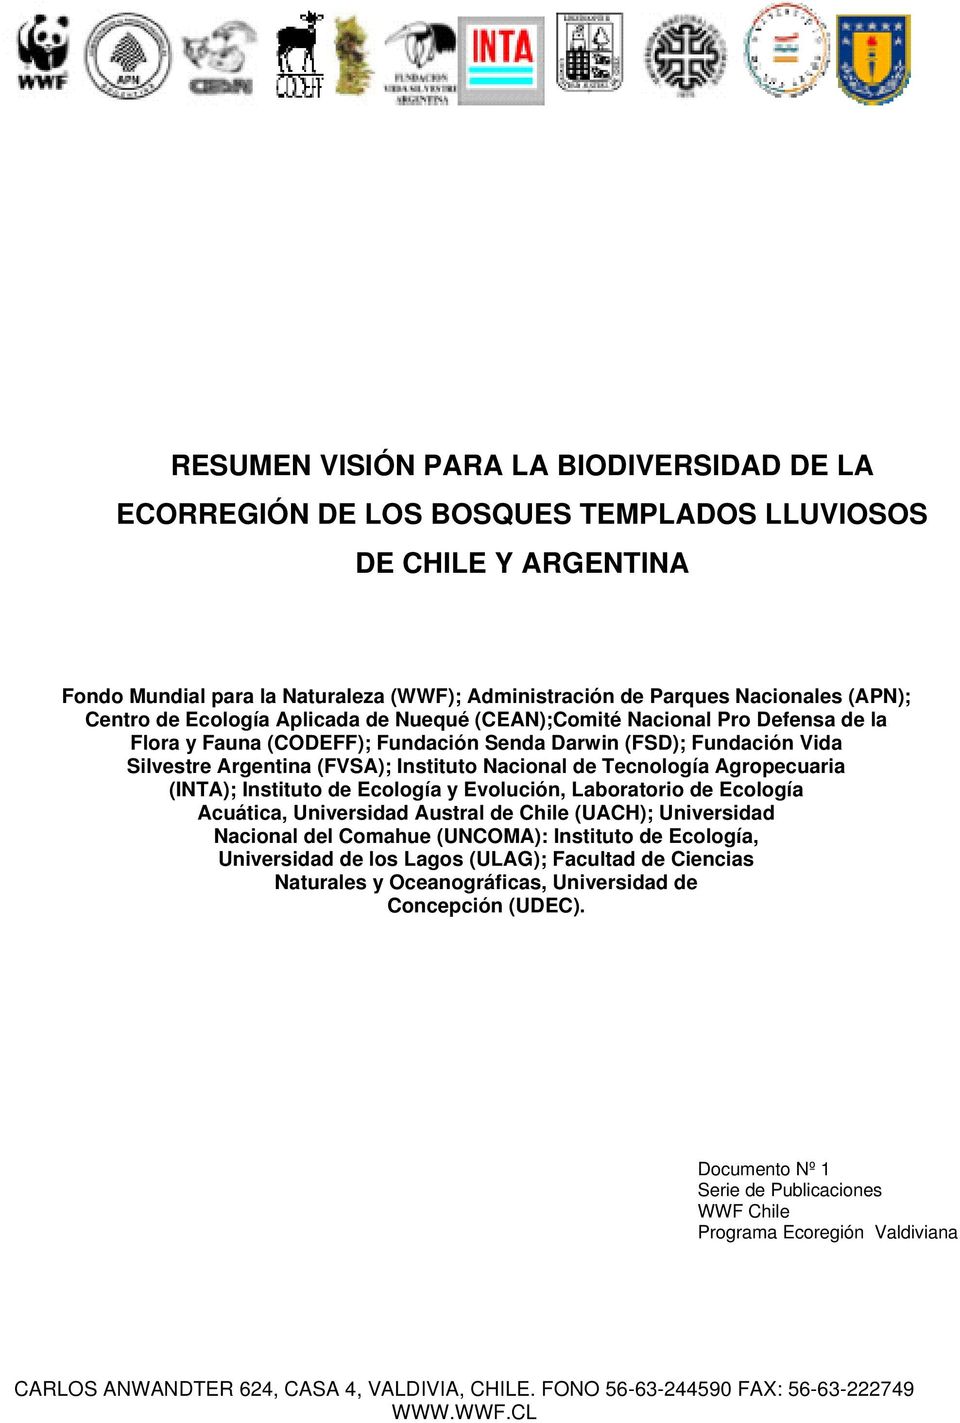 Tecnología Agropecuaria (INTA); Instituto de Ecología y Evolución, Laboratorio de Ecología Acuática, Universidad Austral de Chile (UACH); Universidad Nacional del Comahue (UNCOMA): Instituto de